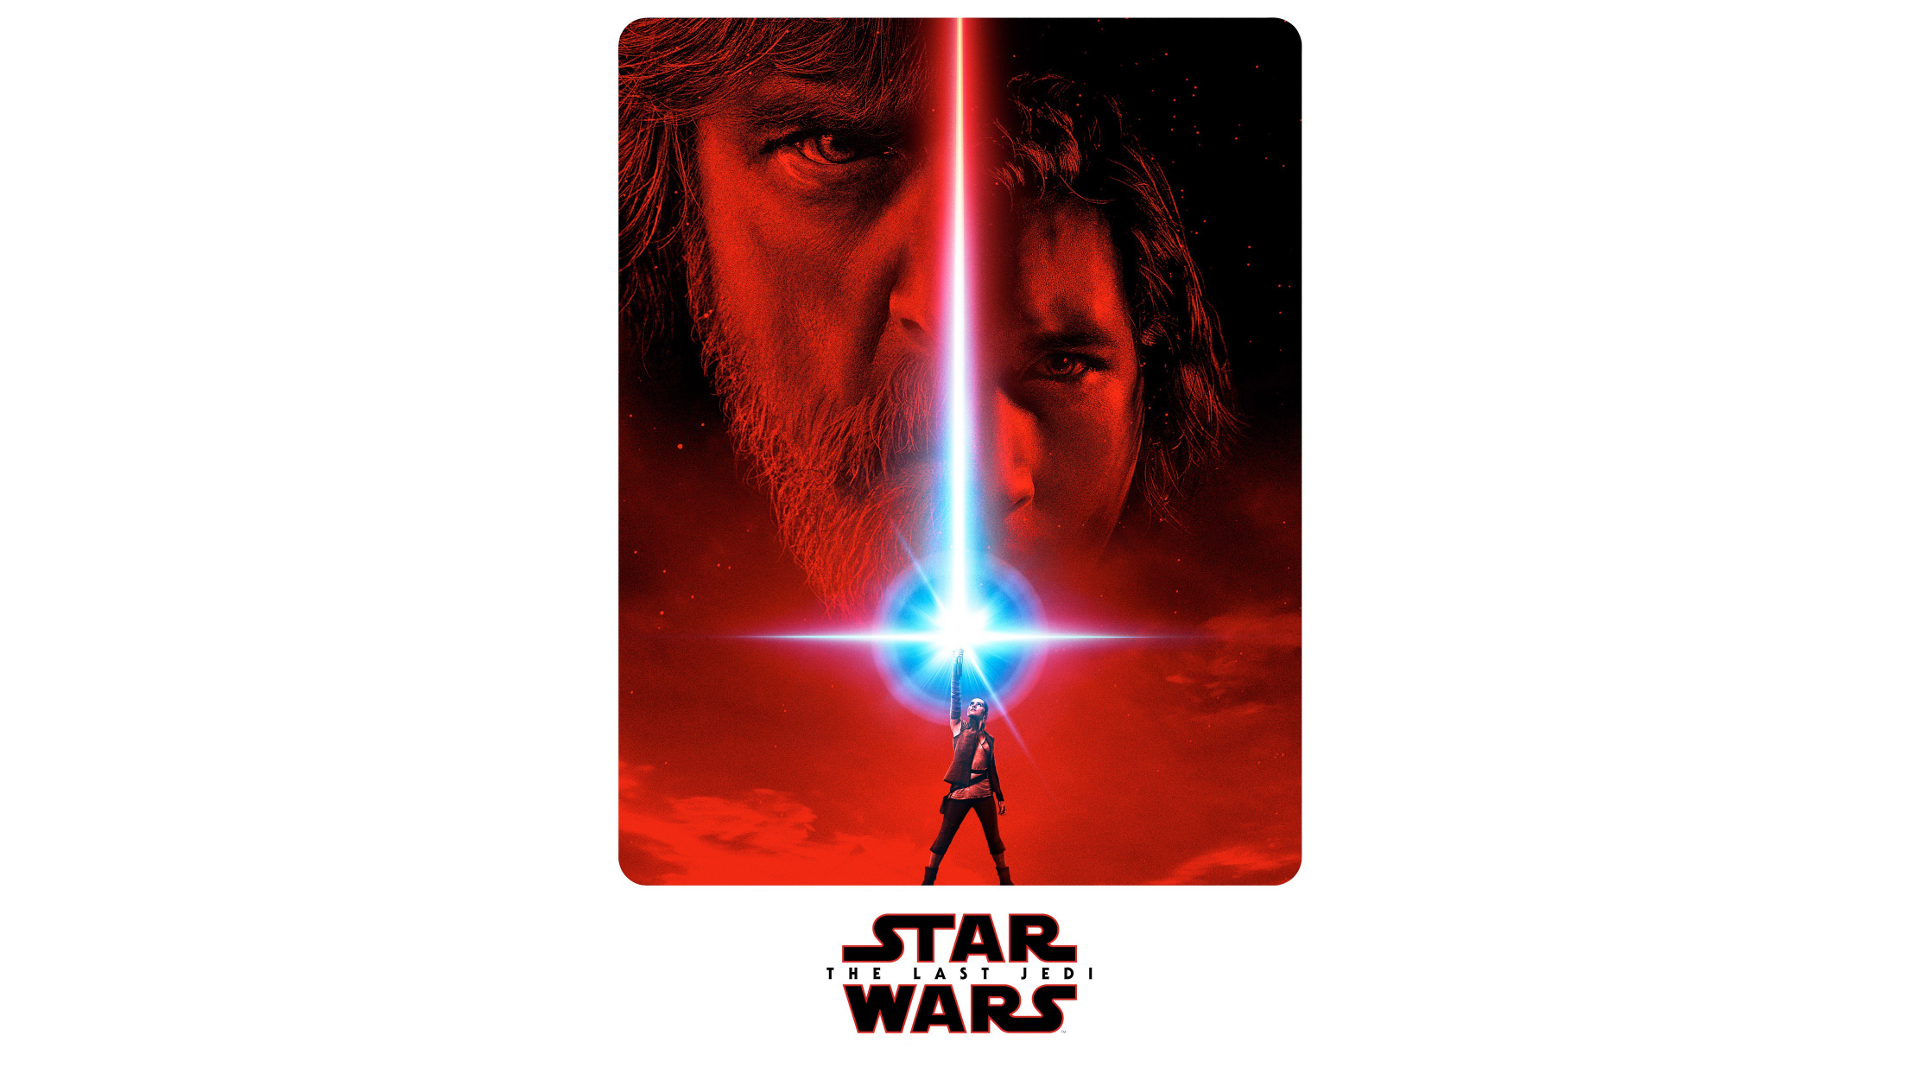 Star Wars The Last Jedi Star Wars Luke Skywalker Kylo Ren Rey From Star Wars Lightsaber 1920x1080